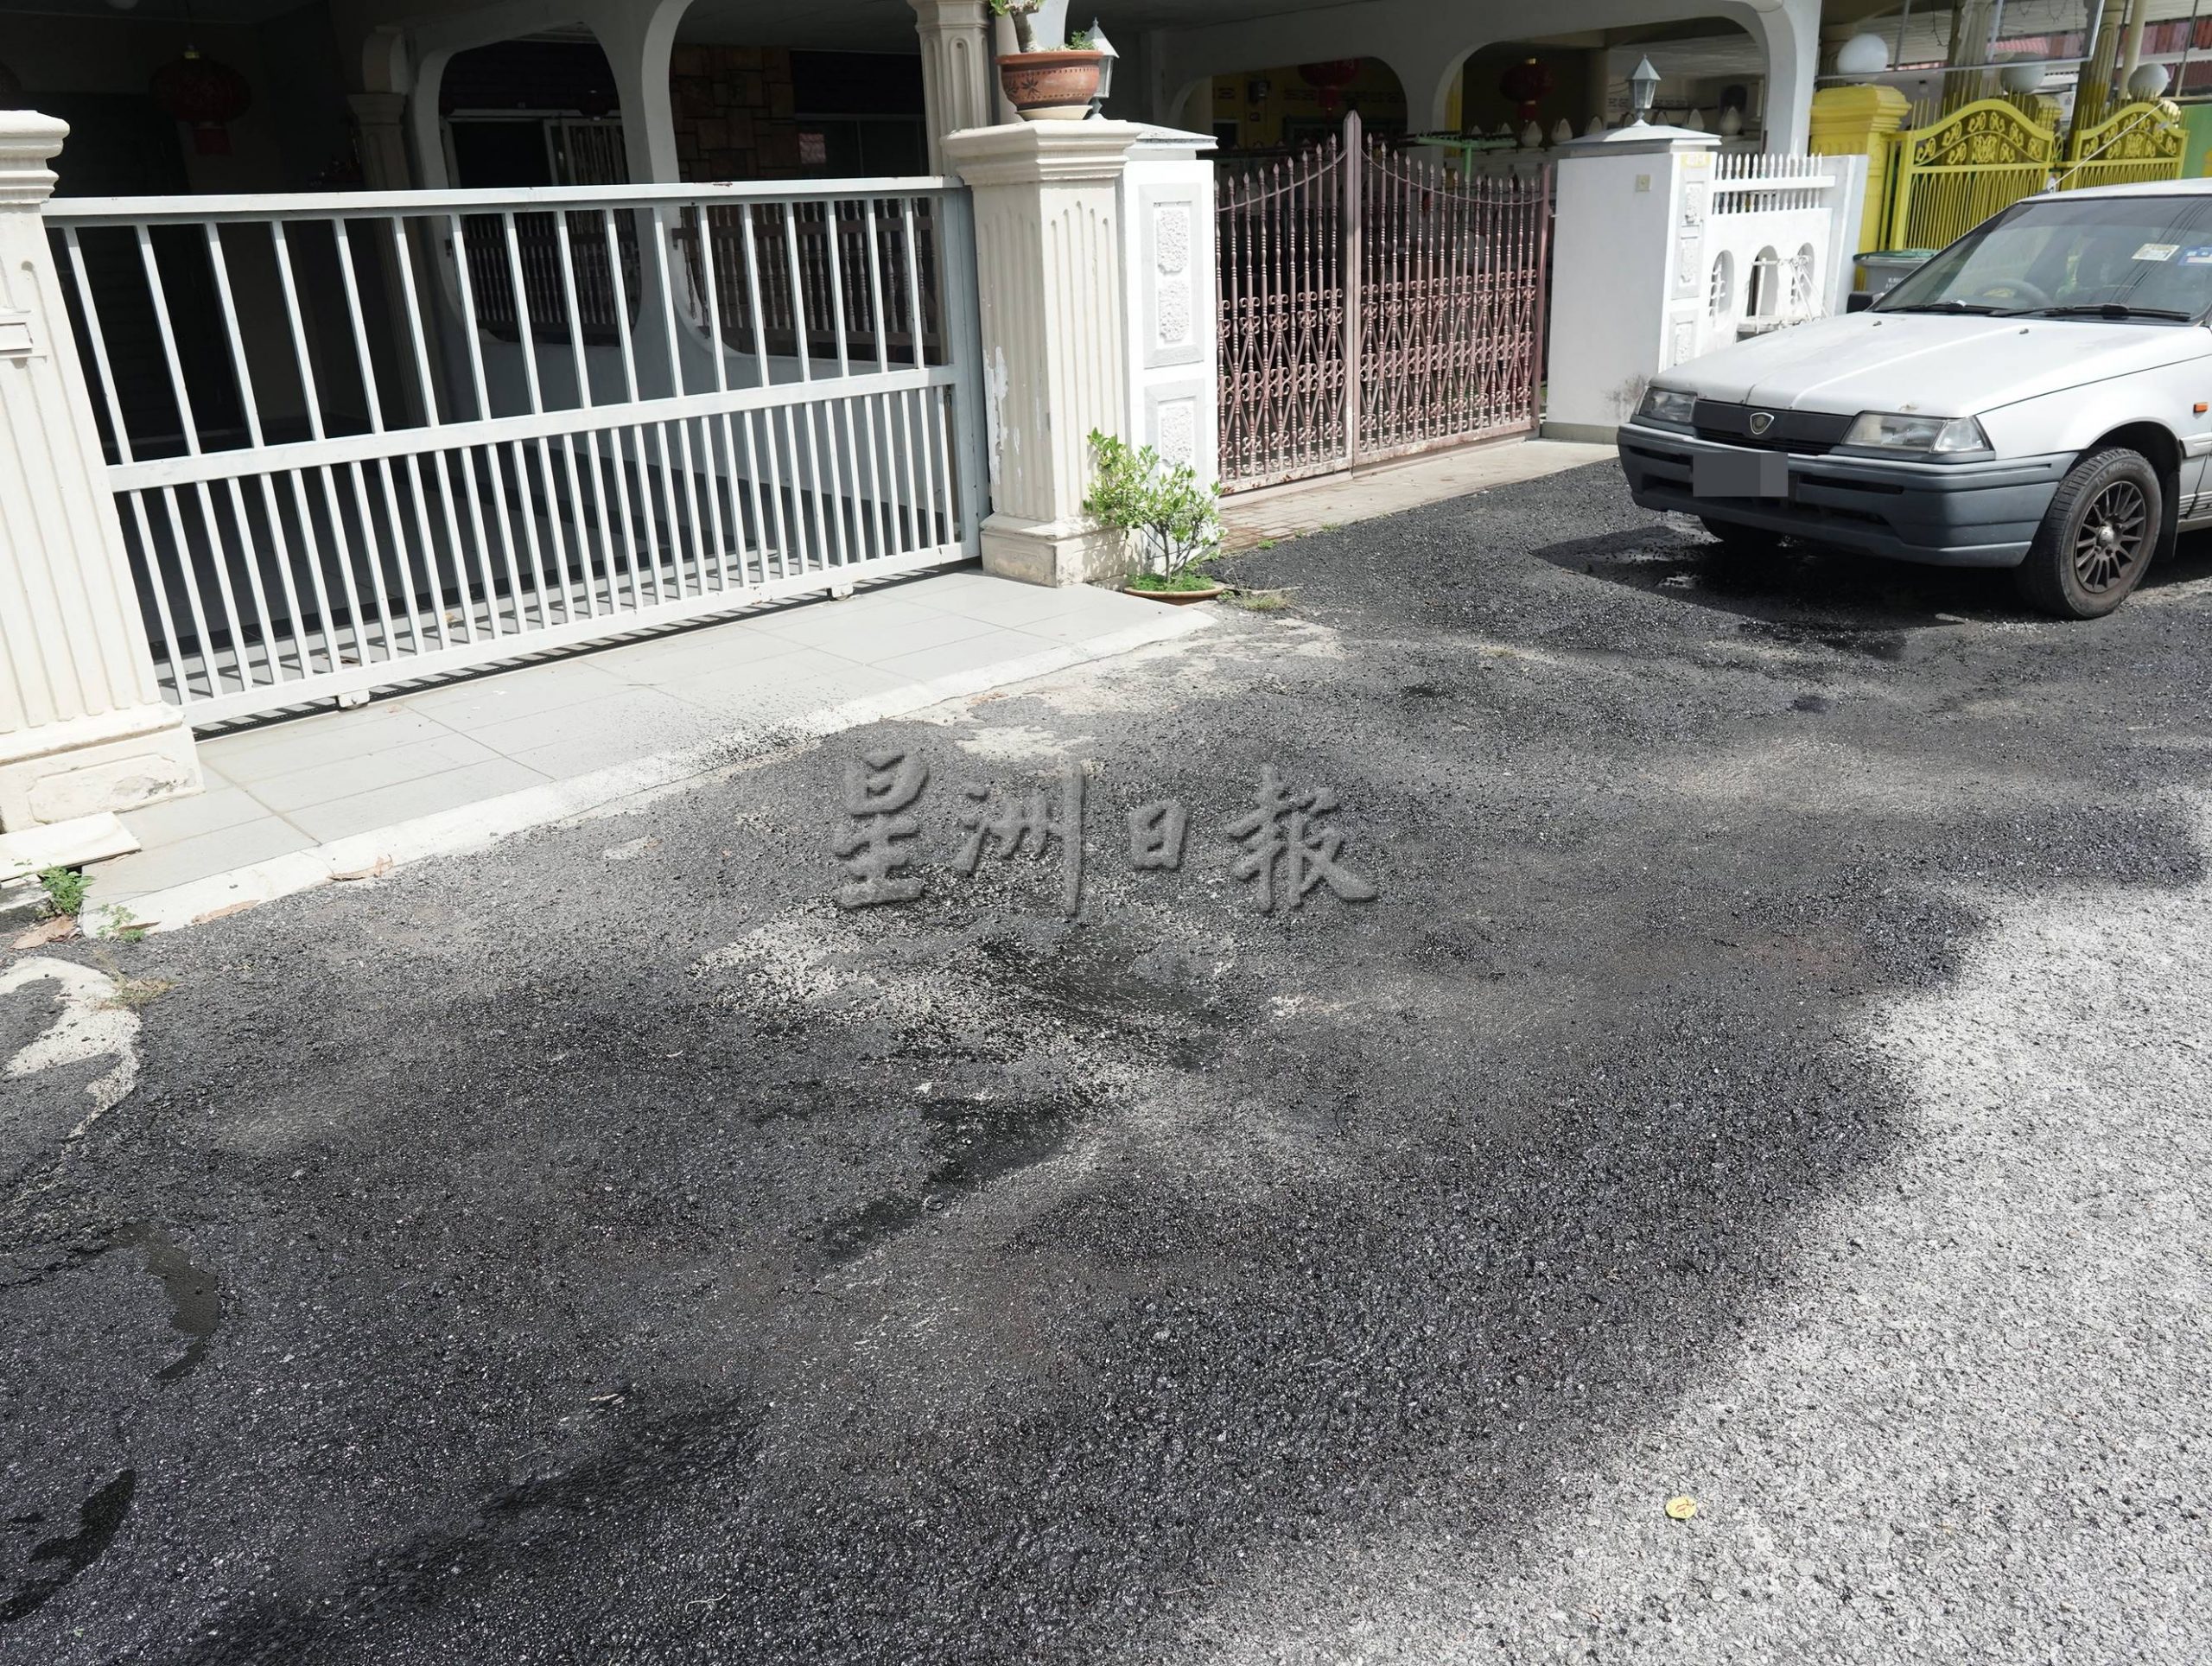 （古城版）第三期葛南格花园重铺道路，刘志俍呼吁移开车子让工程顺利进行